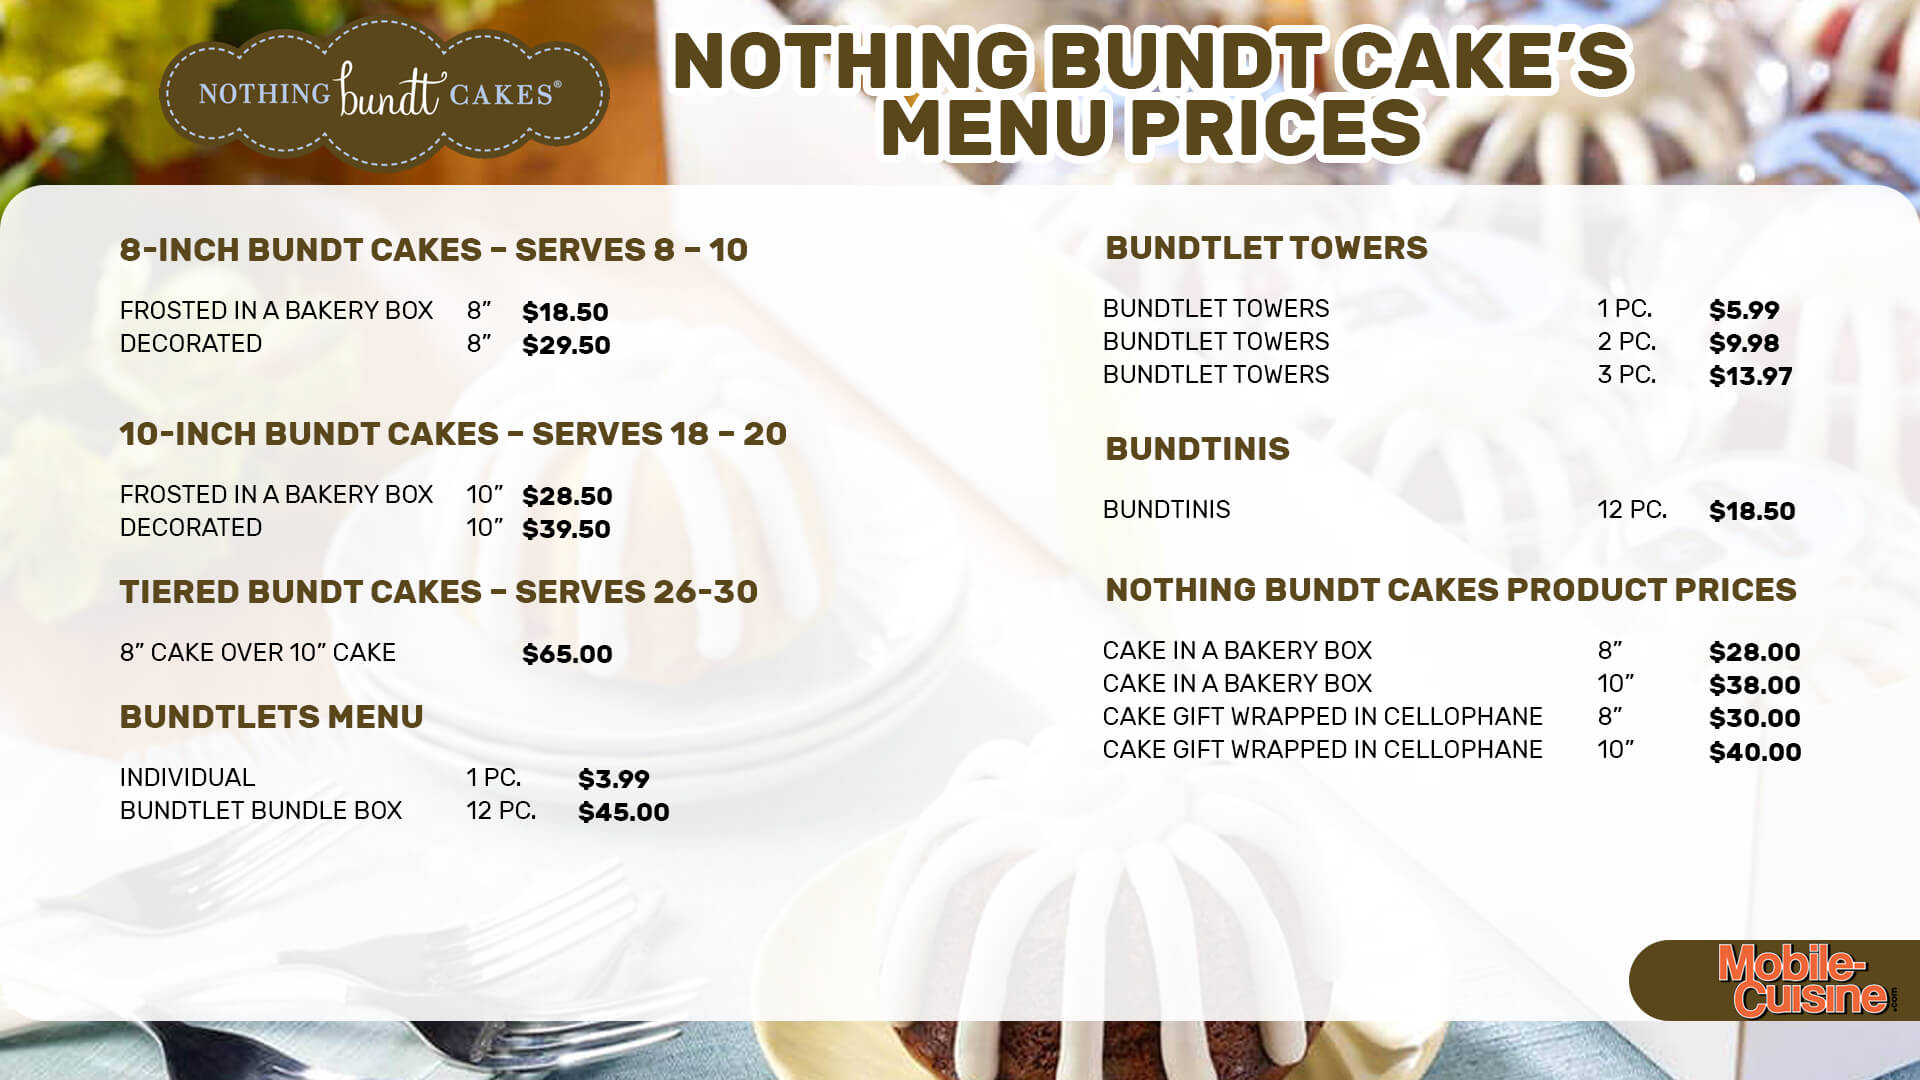 Nothing Bundt Cake menu prices